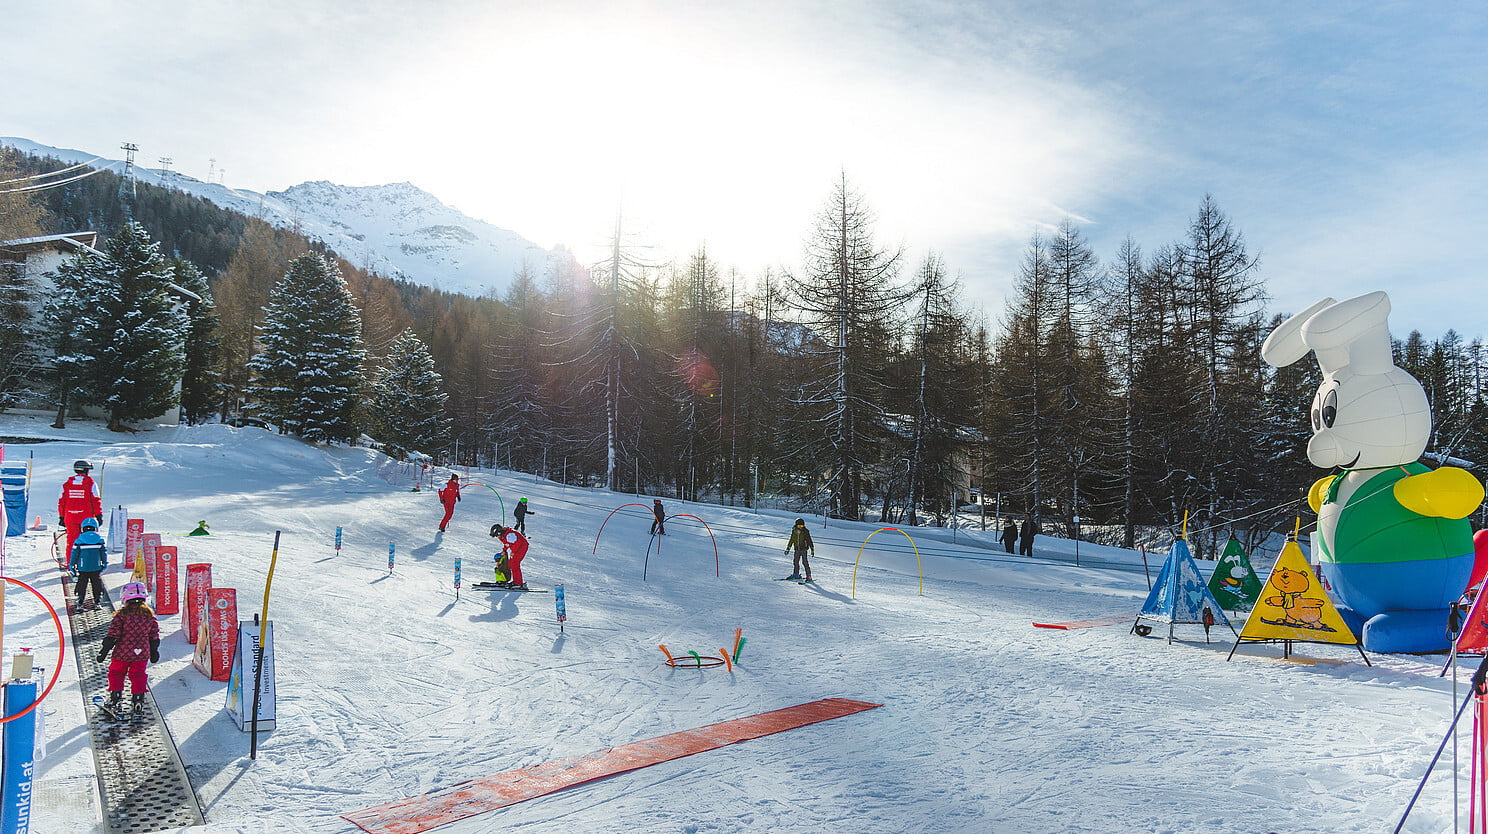 Cristins children's ski lift, Surlej